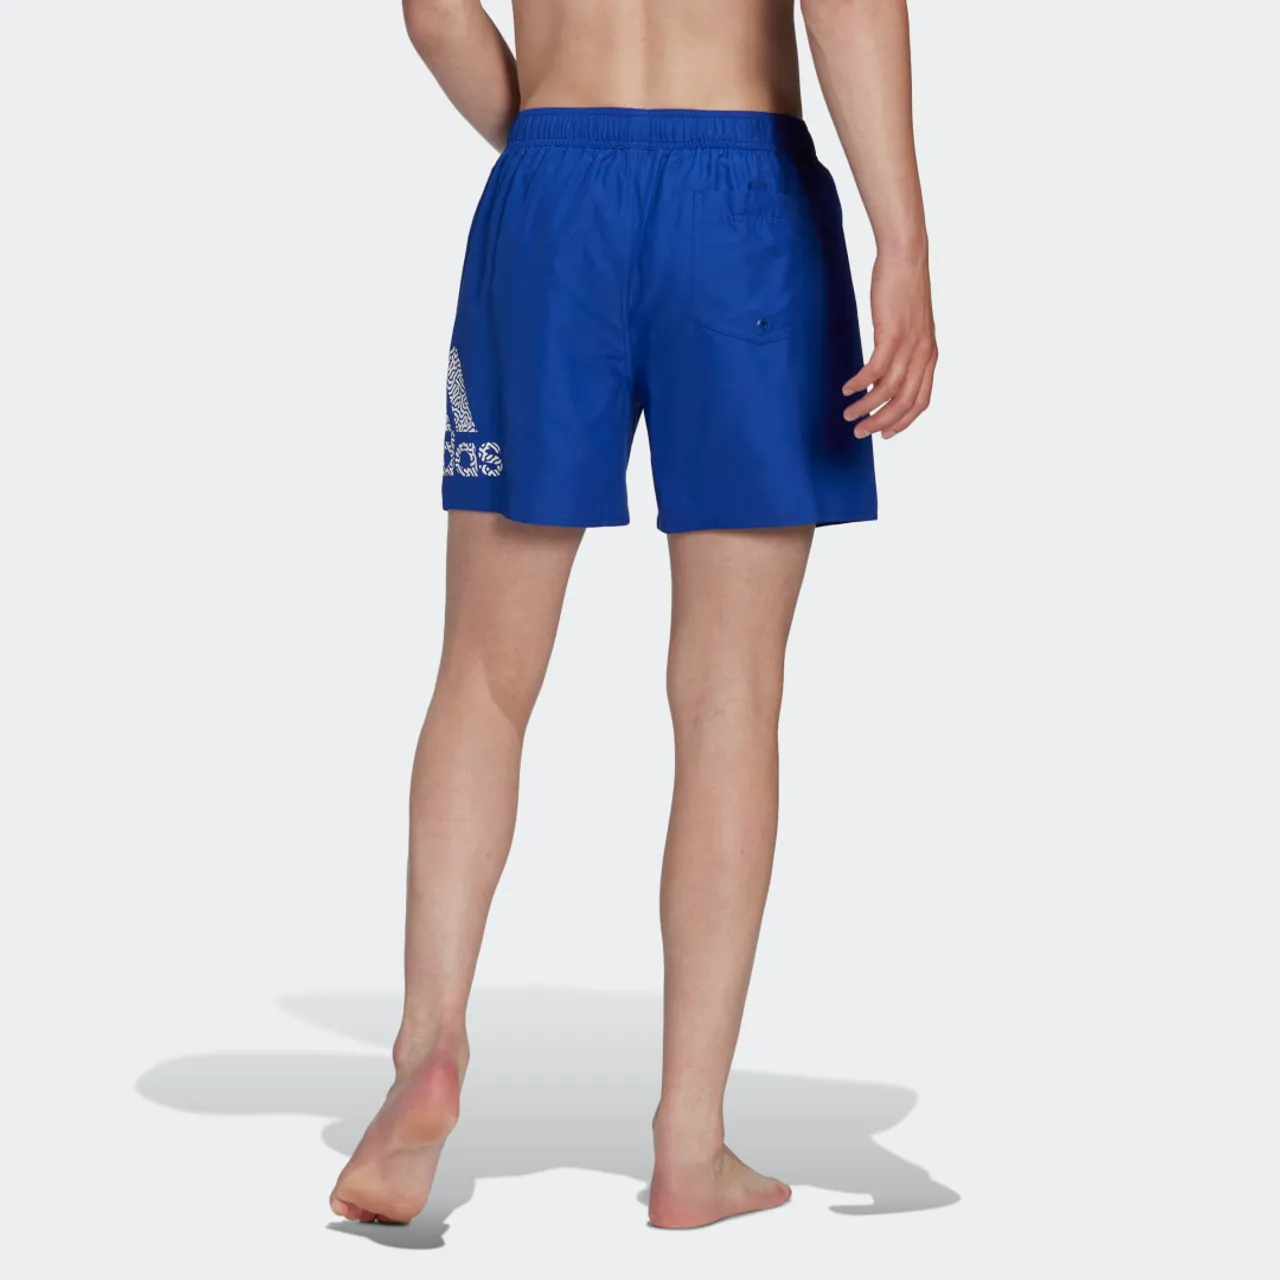 CLX Short Length Swim Shorts